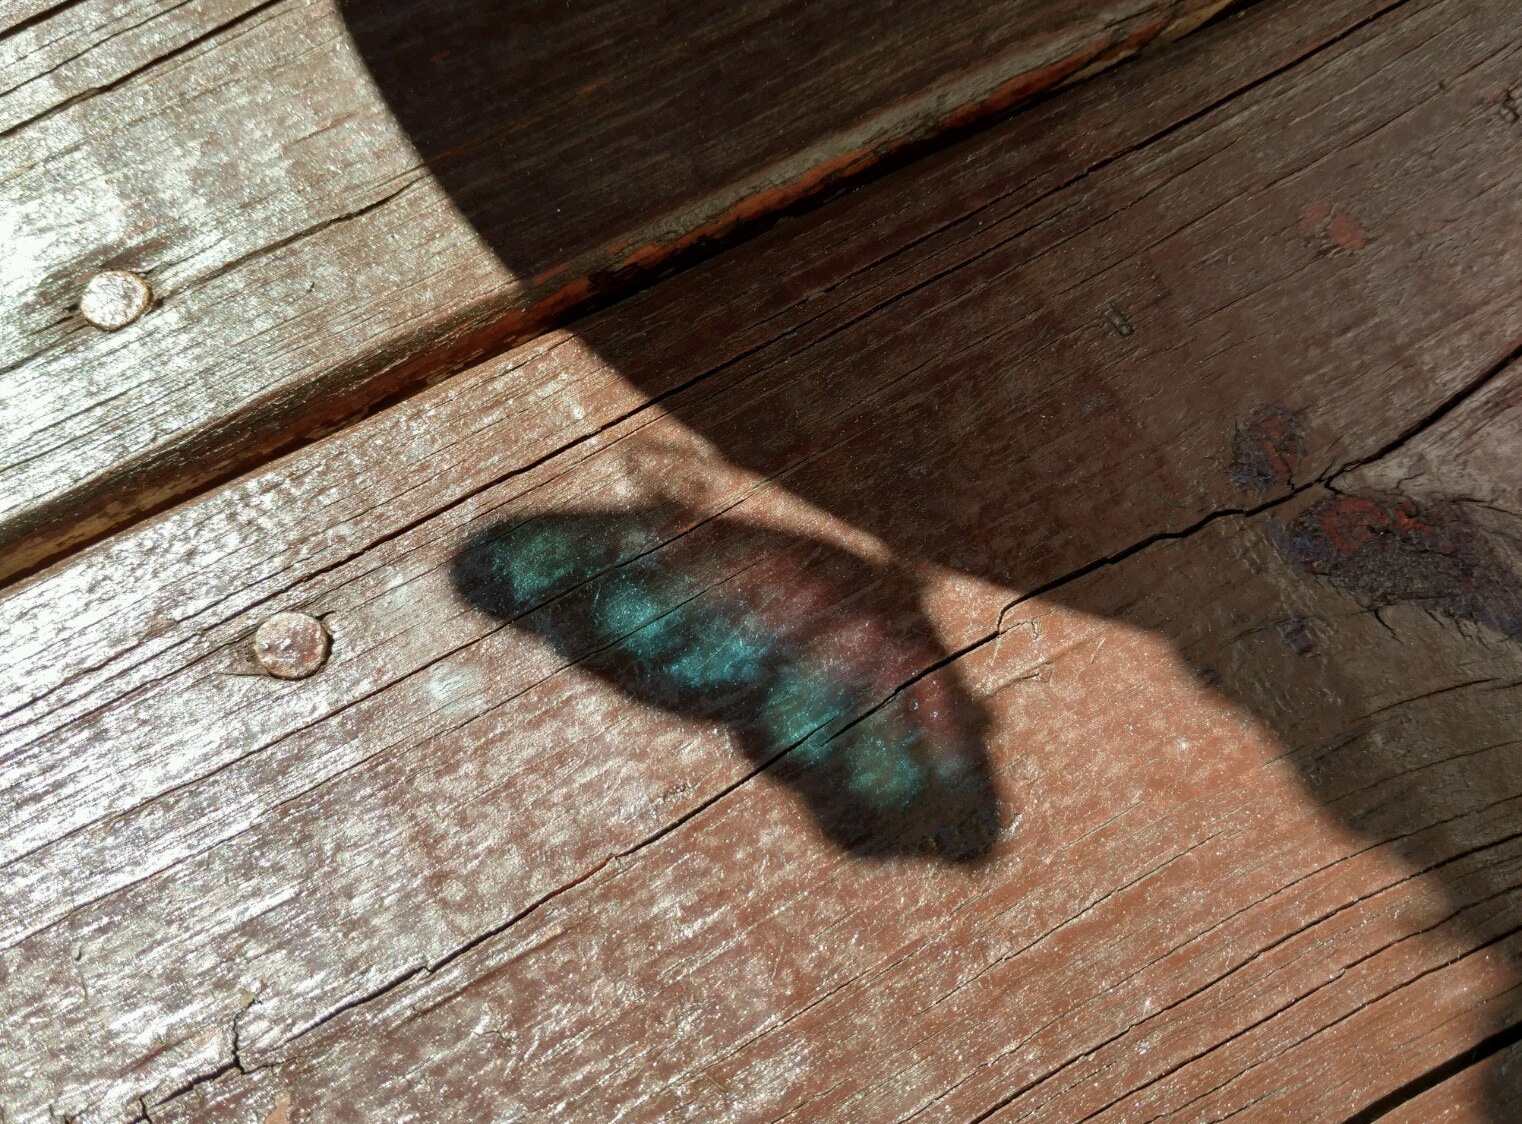 Schatten eines blauen Schmetterlings auf Holz